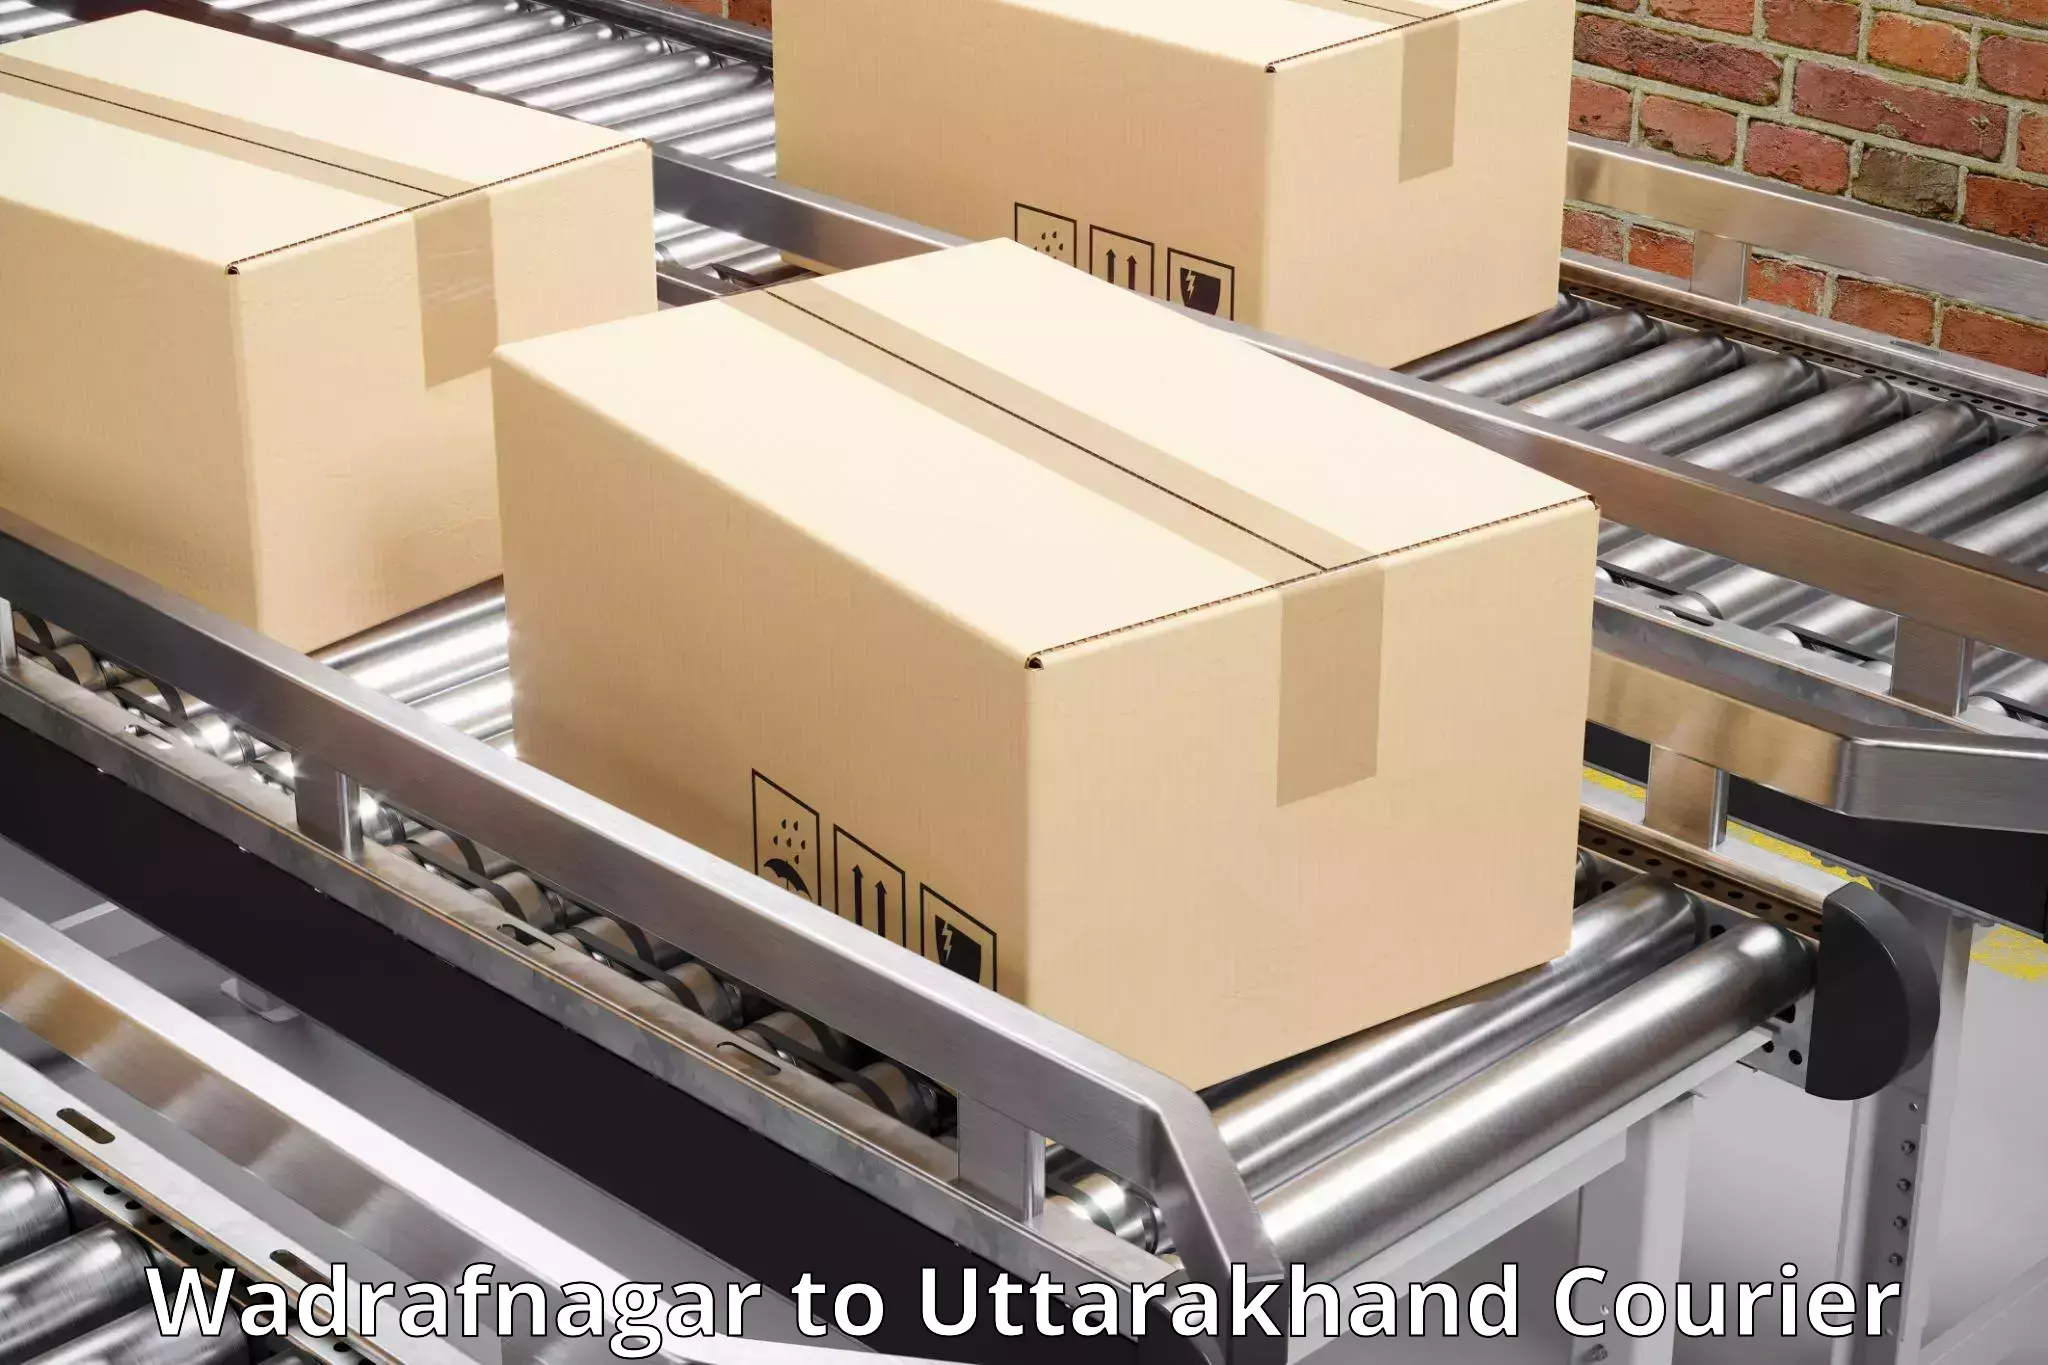 On-demand shipping options Wadrafnagar to Udham Singh Nagar